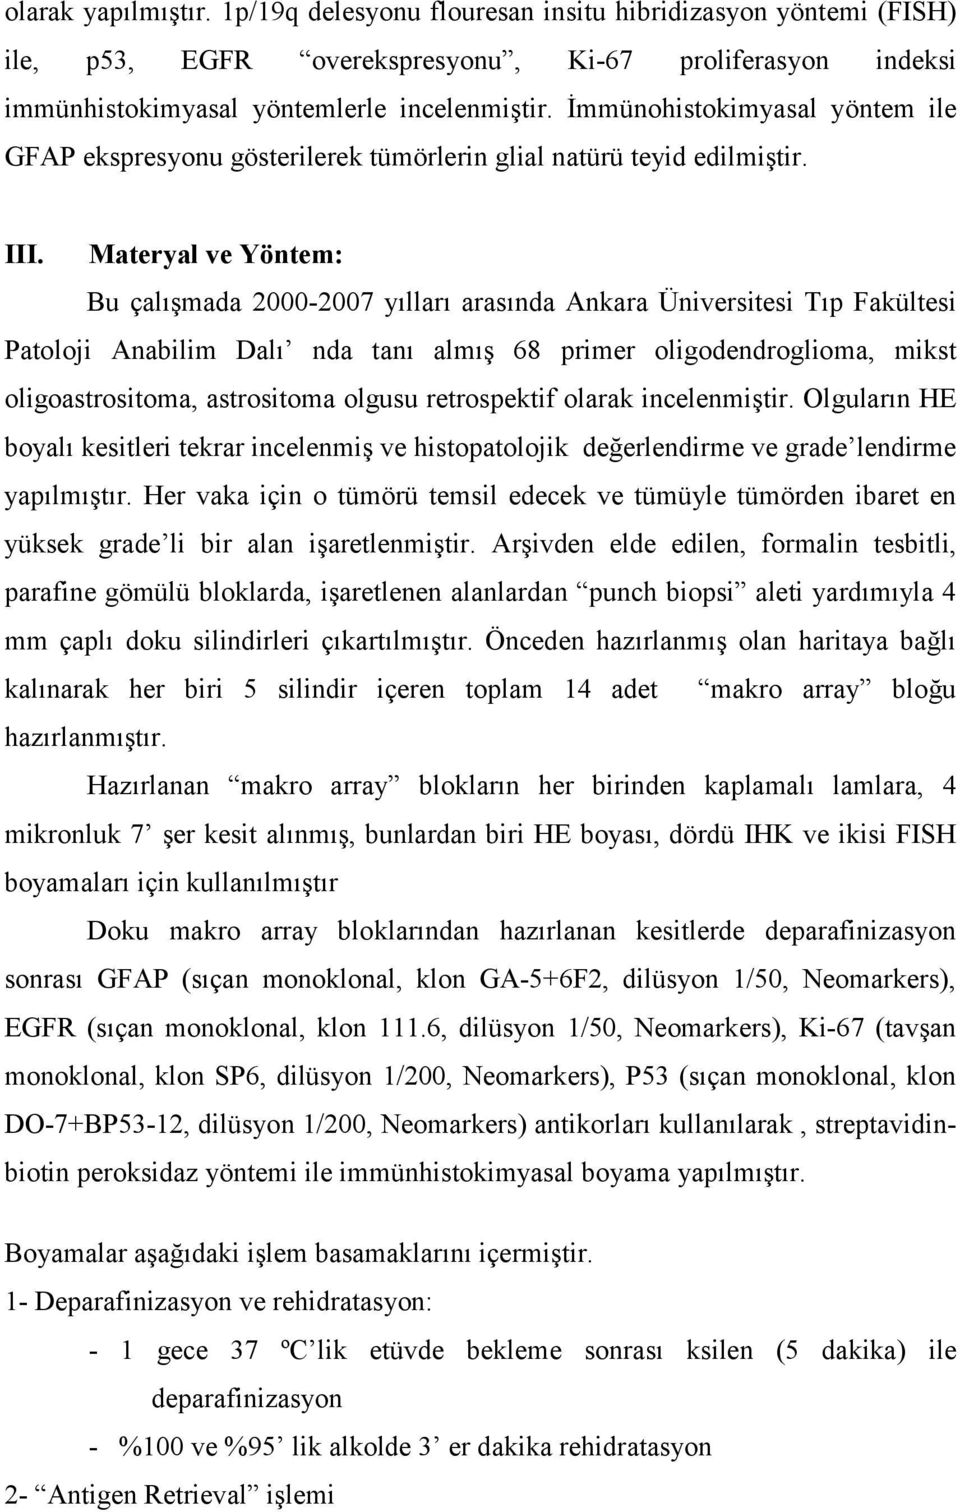 Materyal ve Yöntem: Bu çalışmada 2000-2007 yılları arasında Ankara Üniversitesi Tıp Fakültesi Patoloji Anabilim Dalı nda tanı almış 68 primer oligodendroglioma, mikst oligoastrositoma, astrositoma